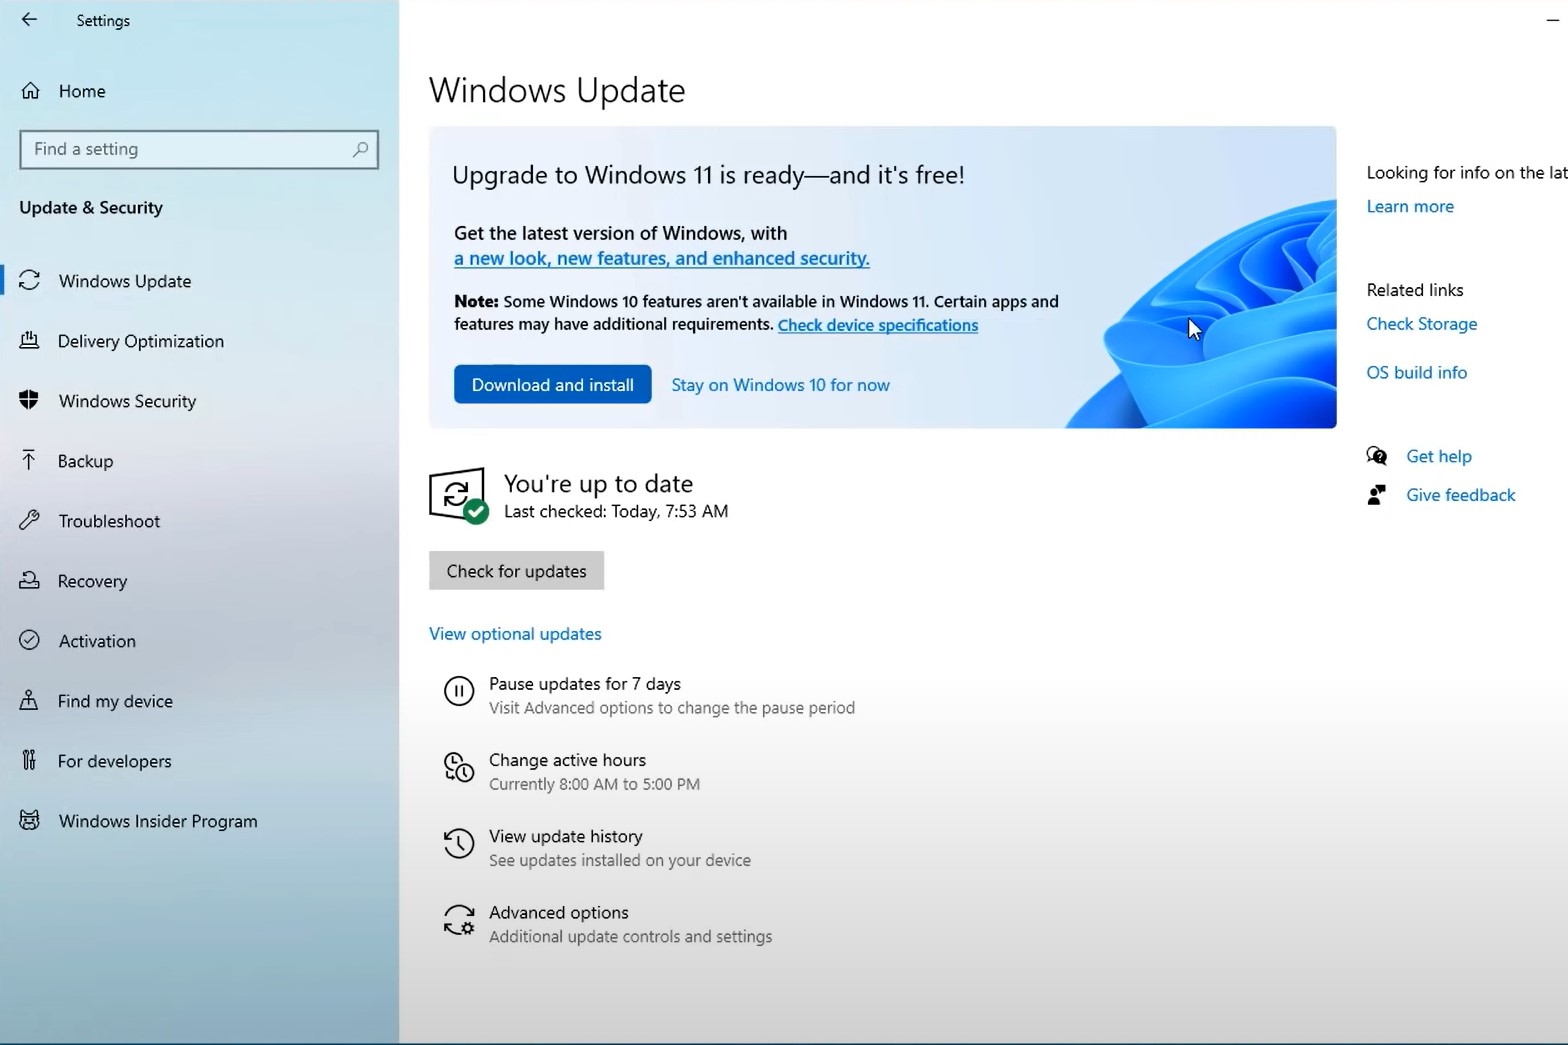 Support for Windows 11? - Platform Usage Support - Developer Forum